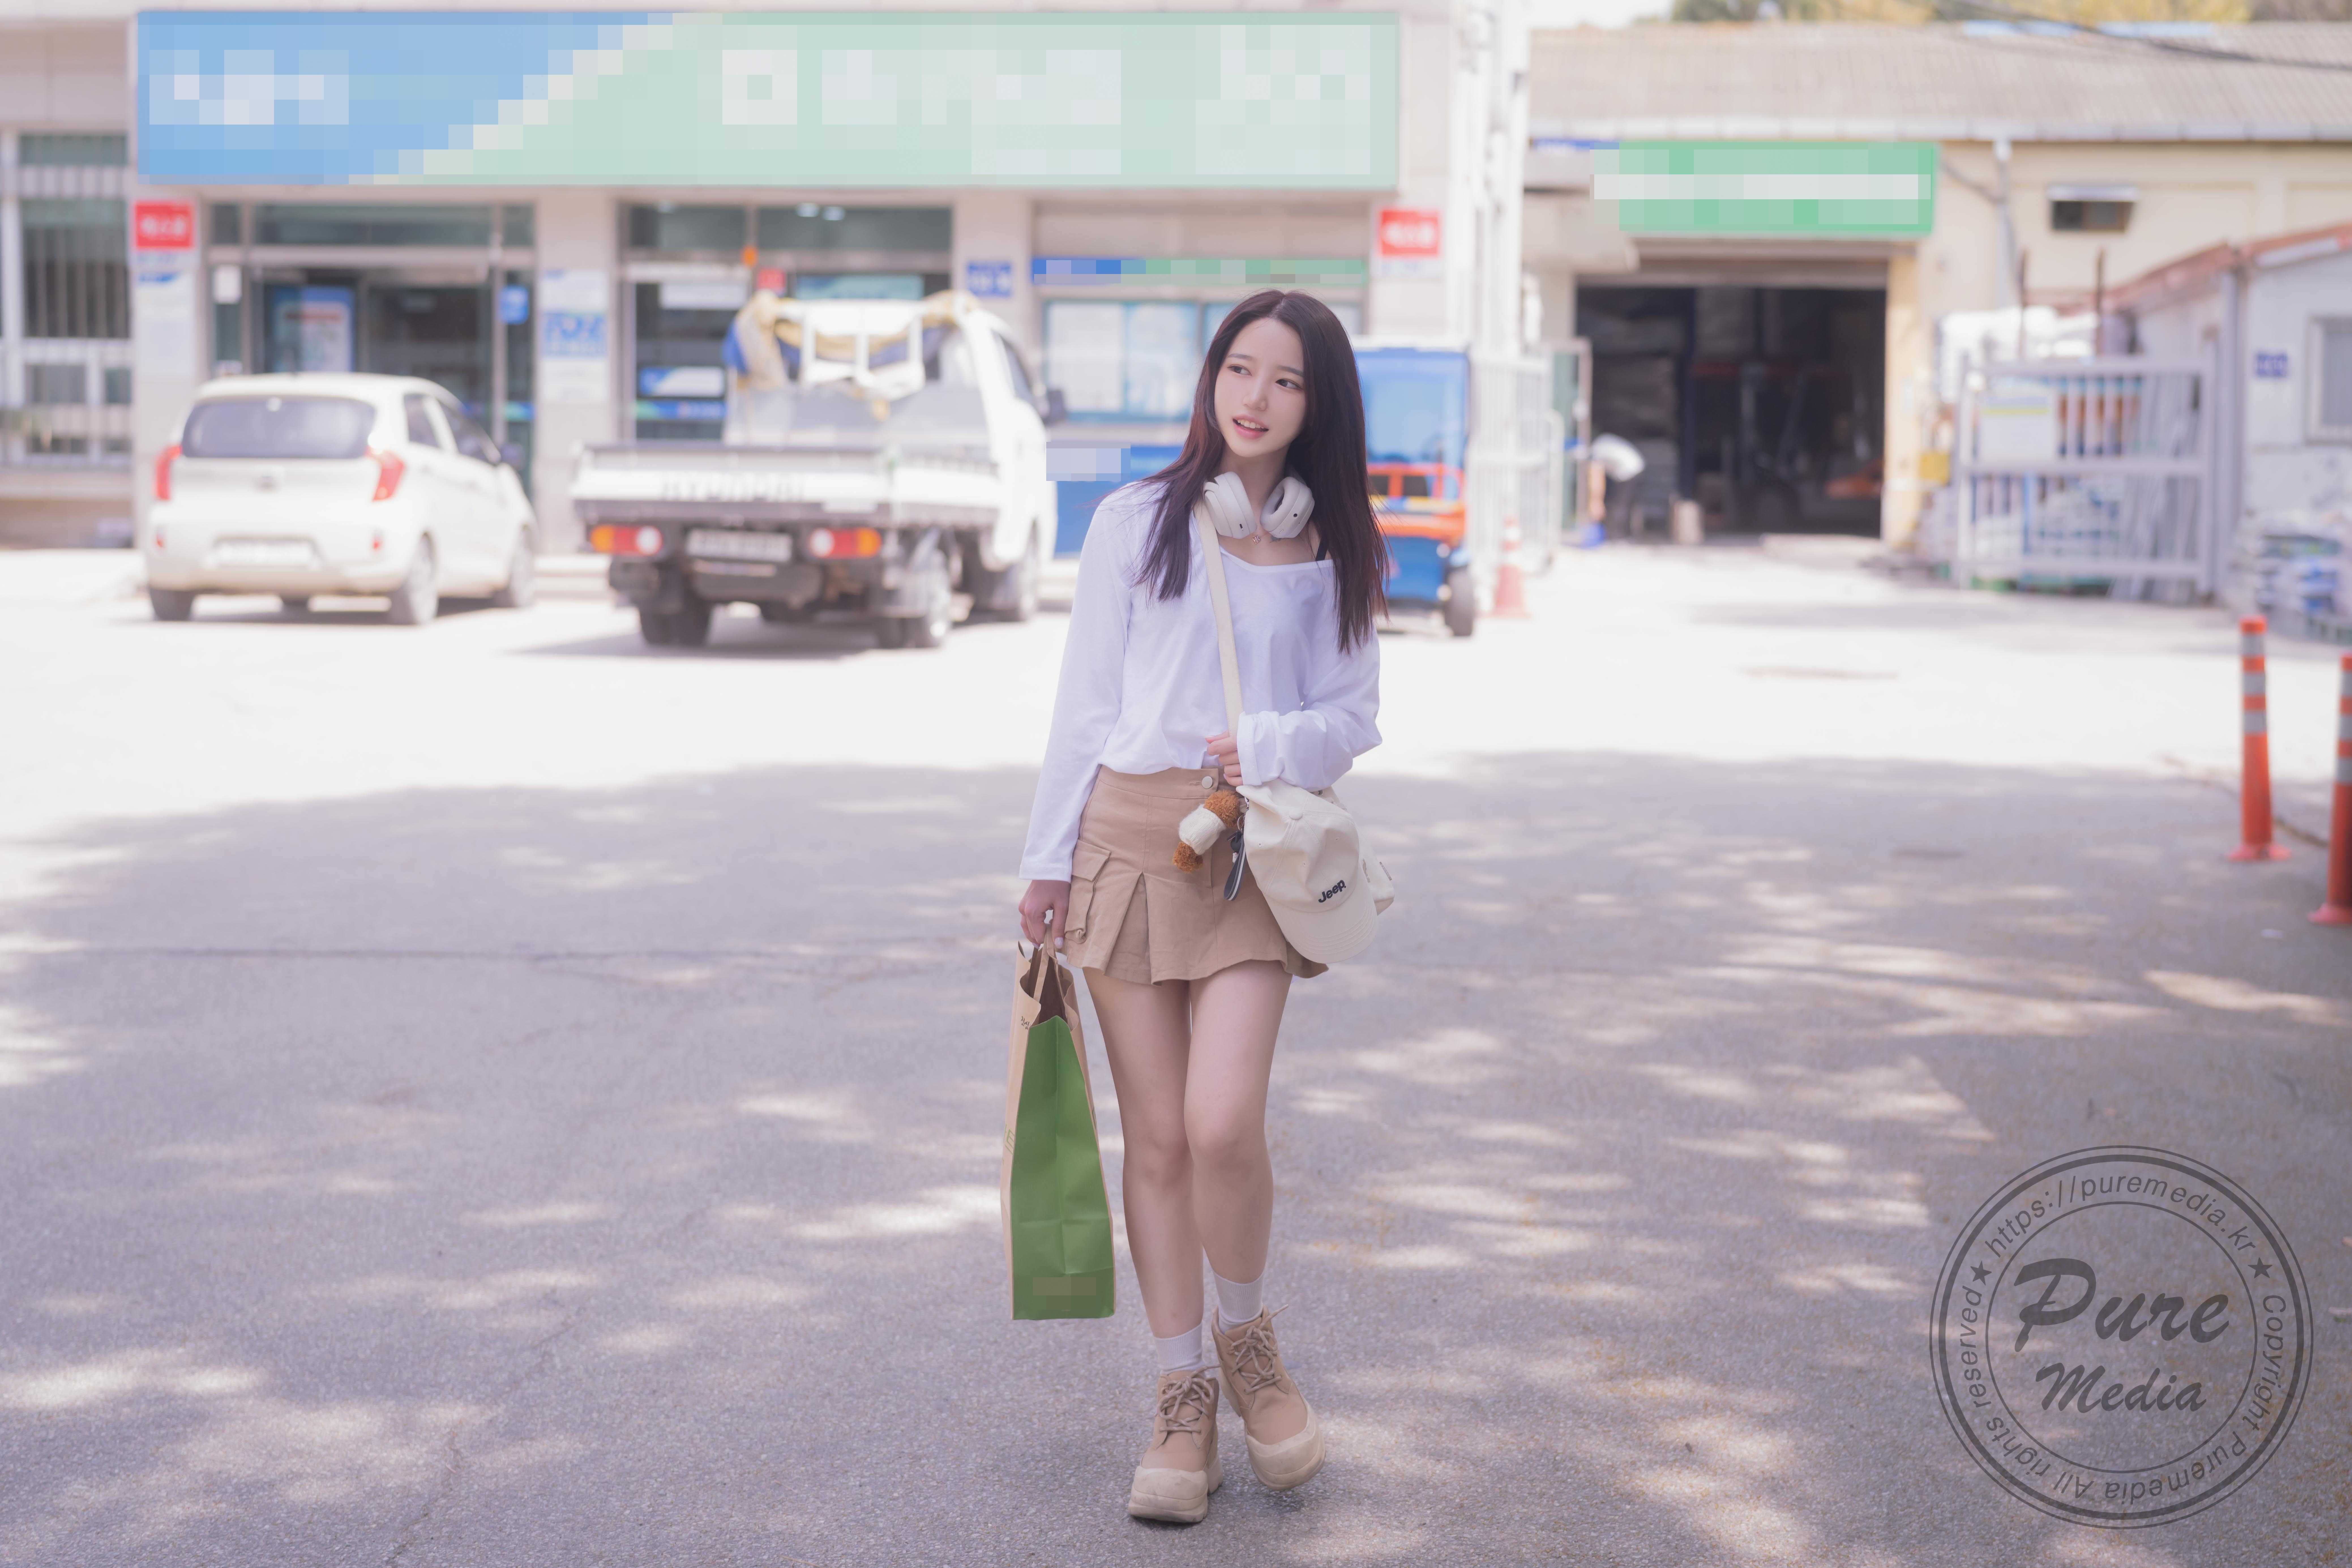 Asian Korean Women Long Hair Black Hair Bag White Blouse Baseball Cap Model 8309x5539